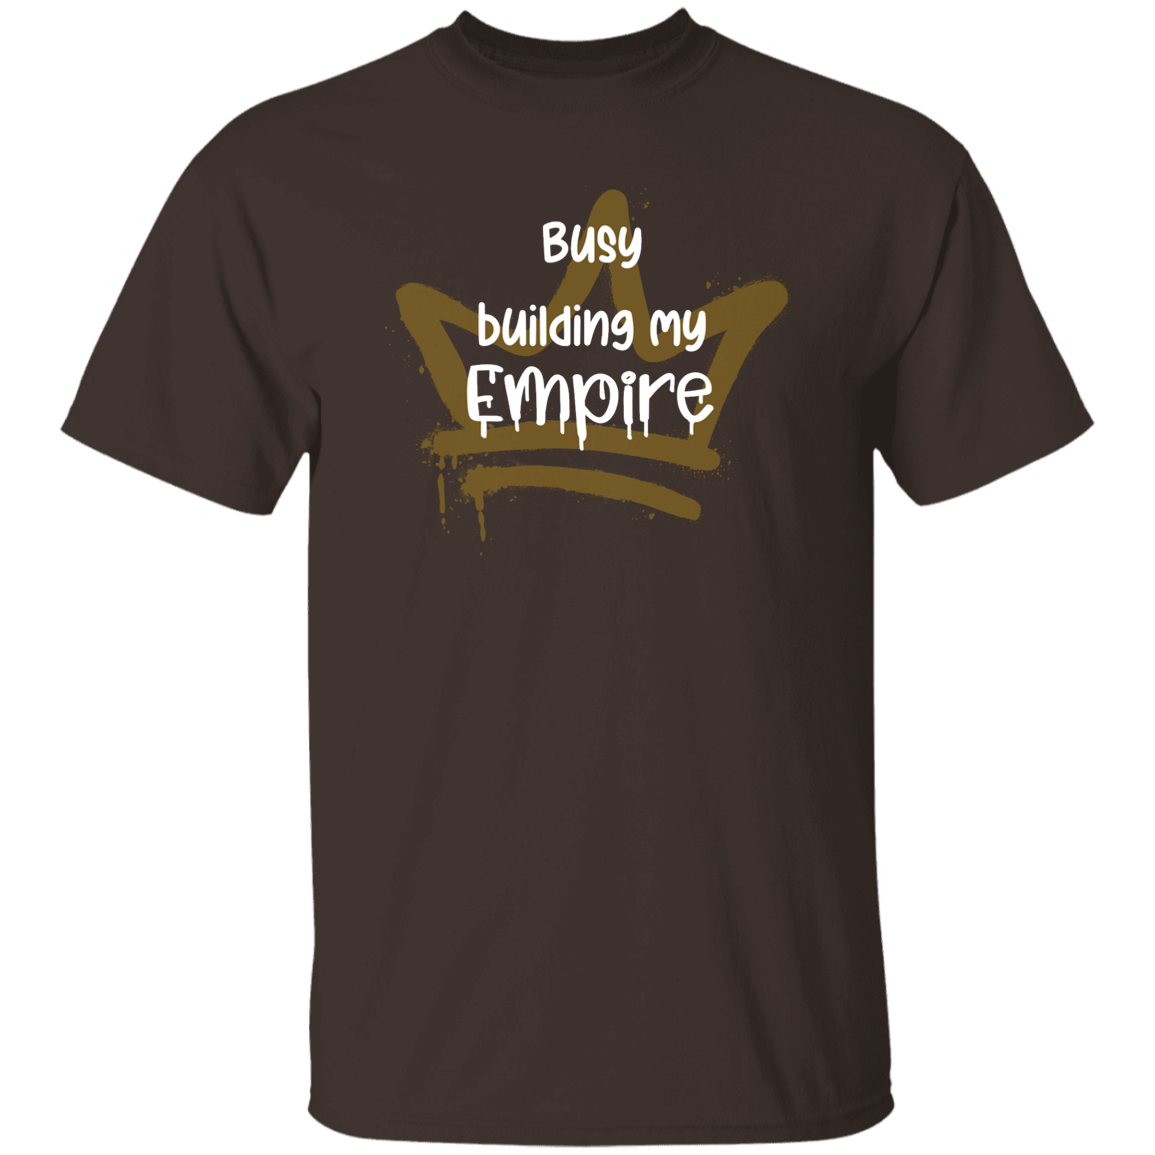 Empire 5.3 oz. T-Shirt